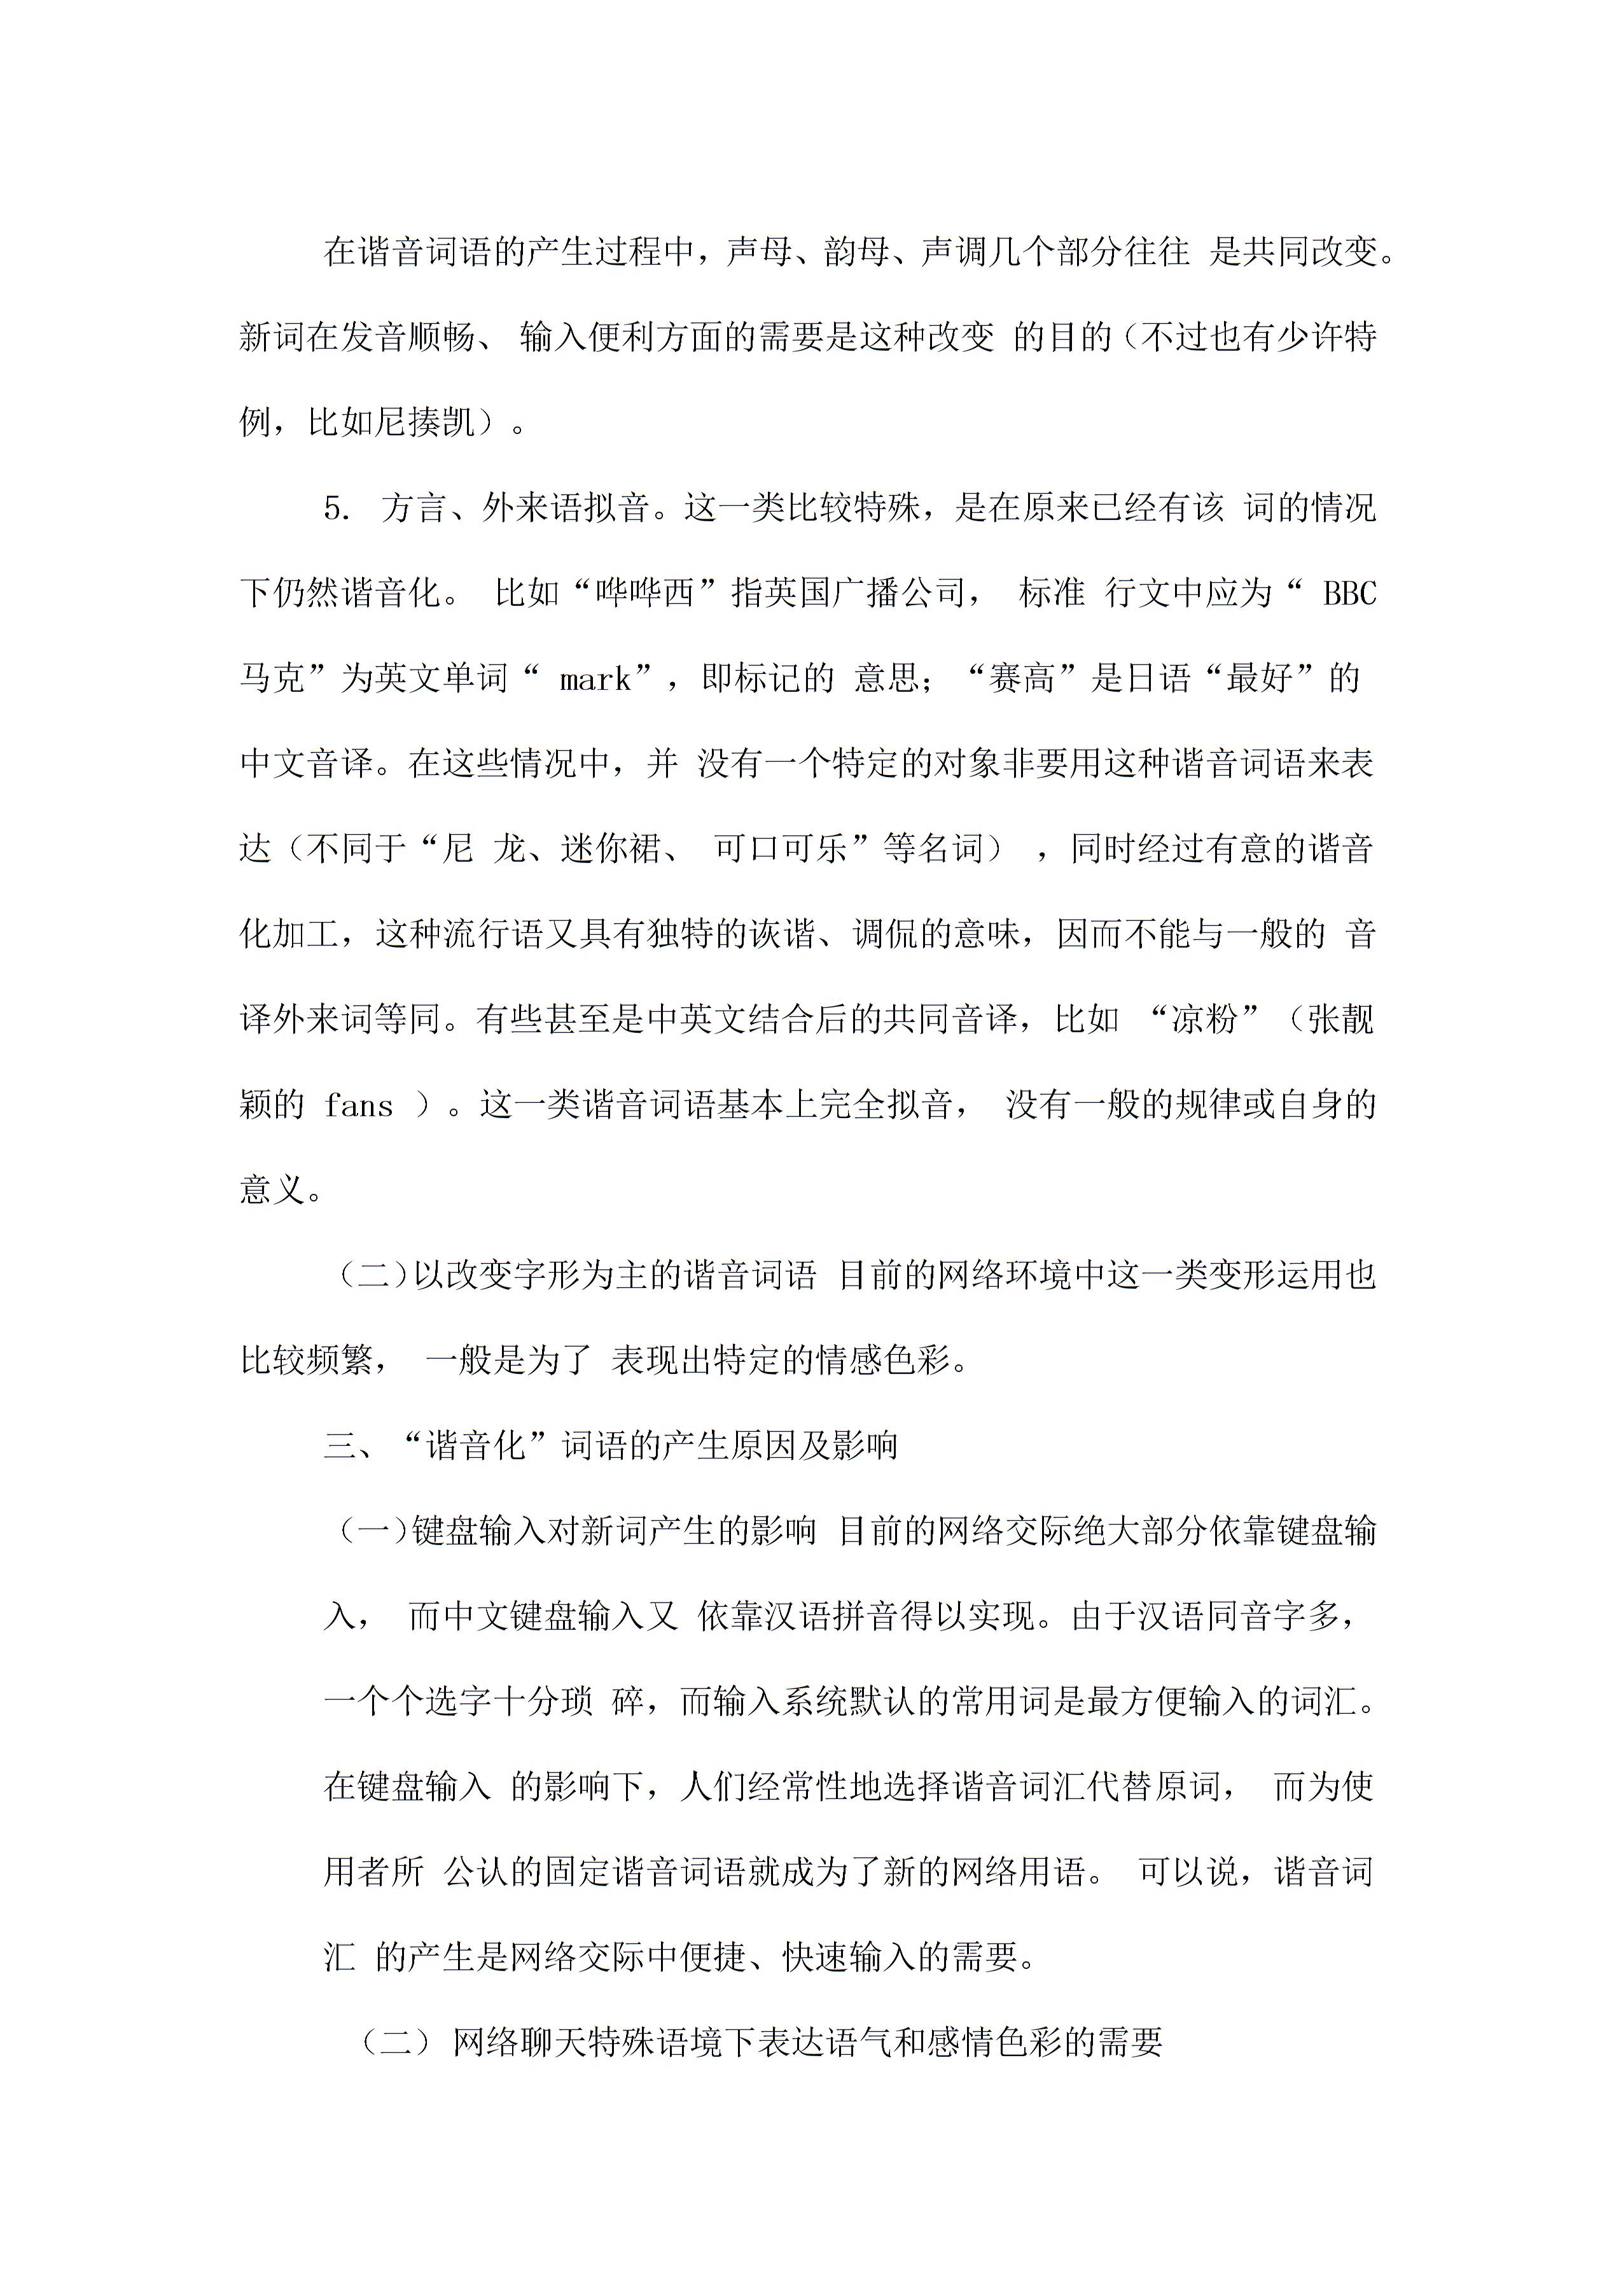 详析网络用语中的汉语外来语谐音词2